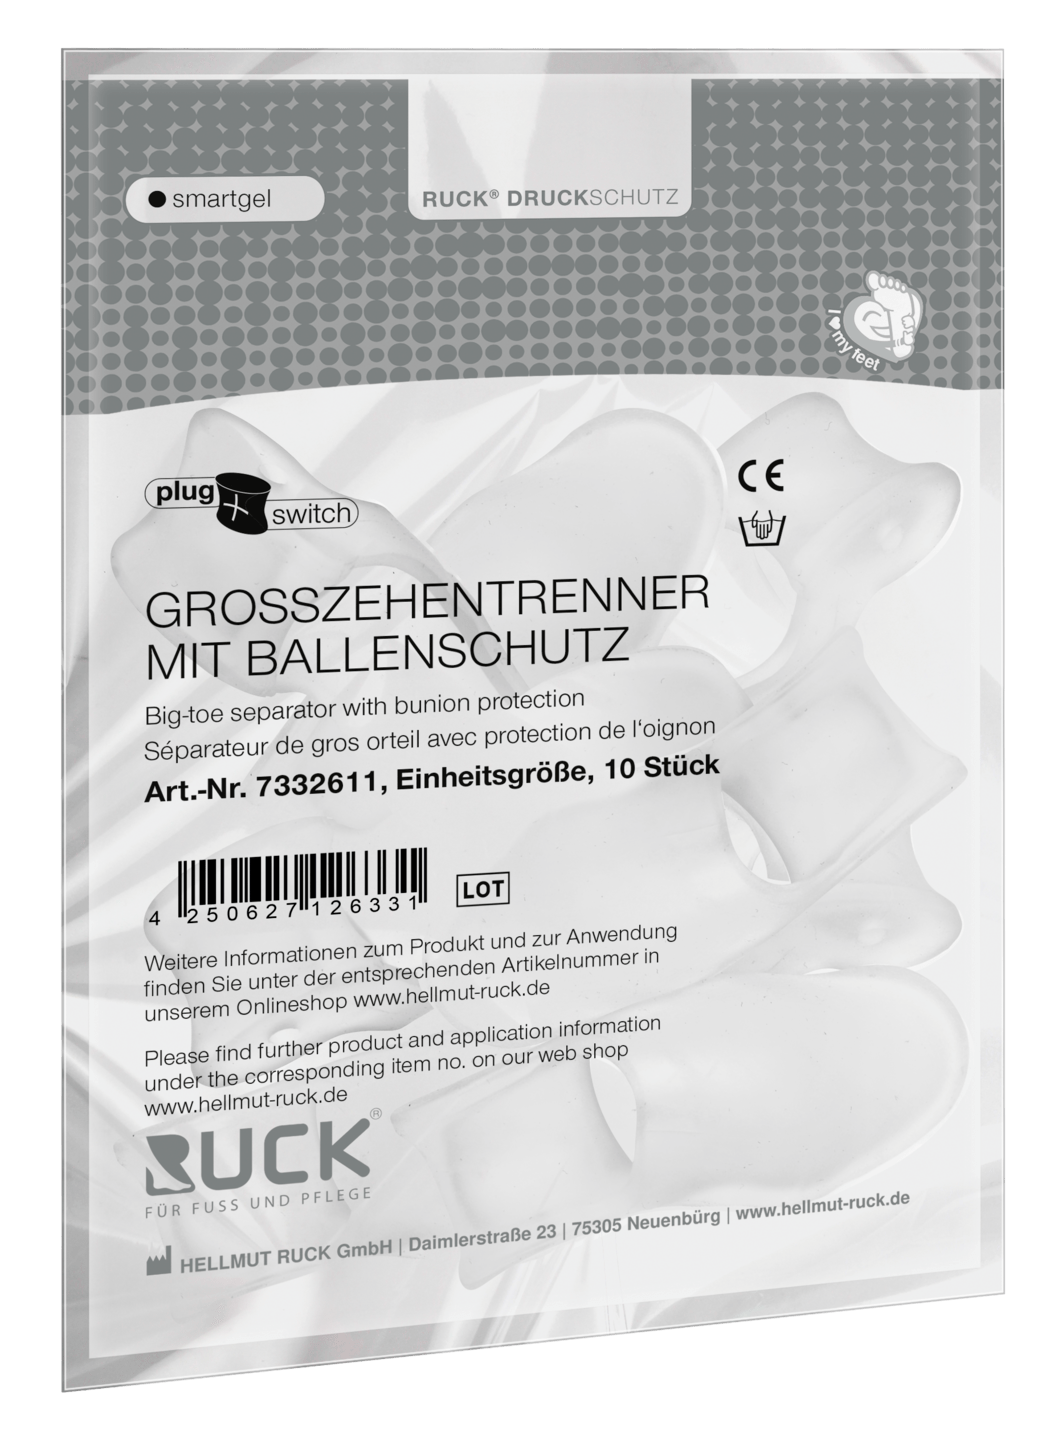 RUCK DRUCKSCHUTZ - Großzehentrenner mit Ballenschutz